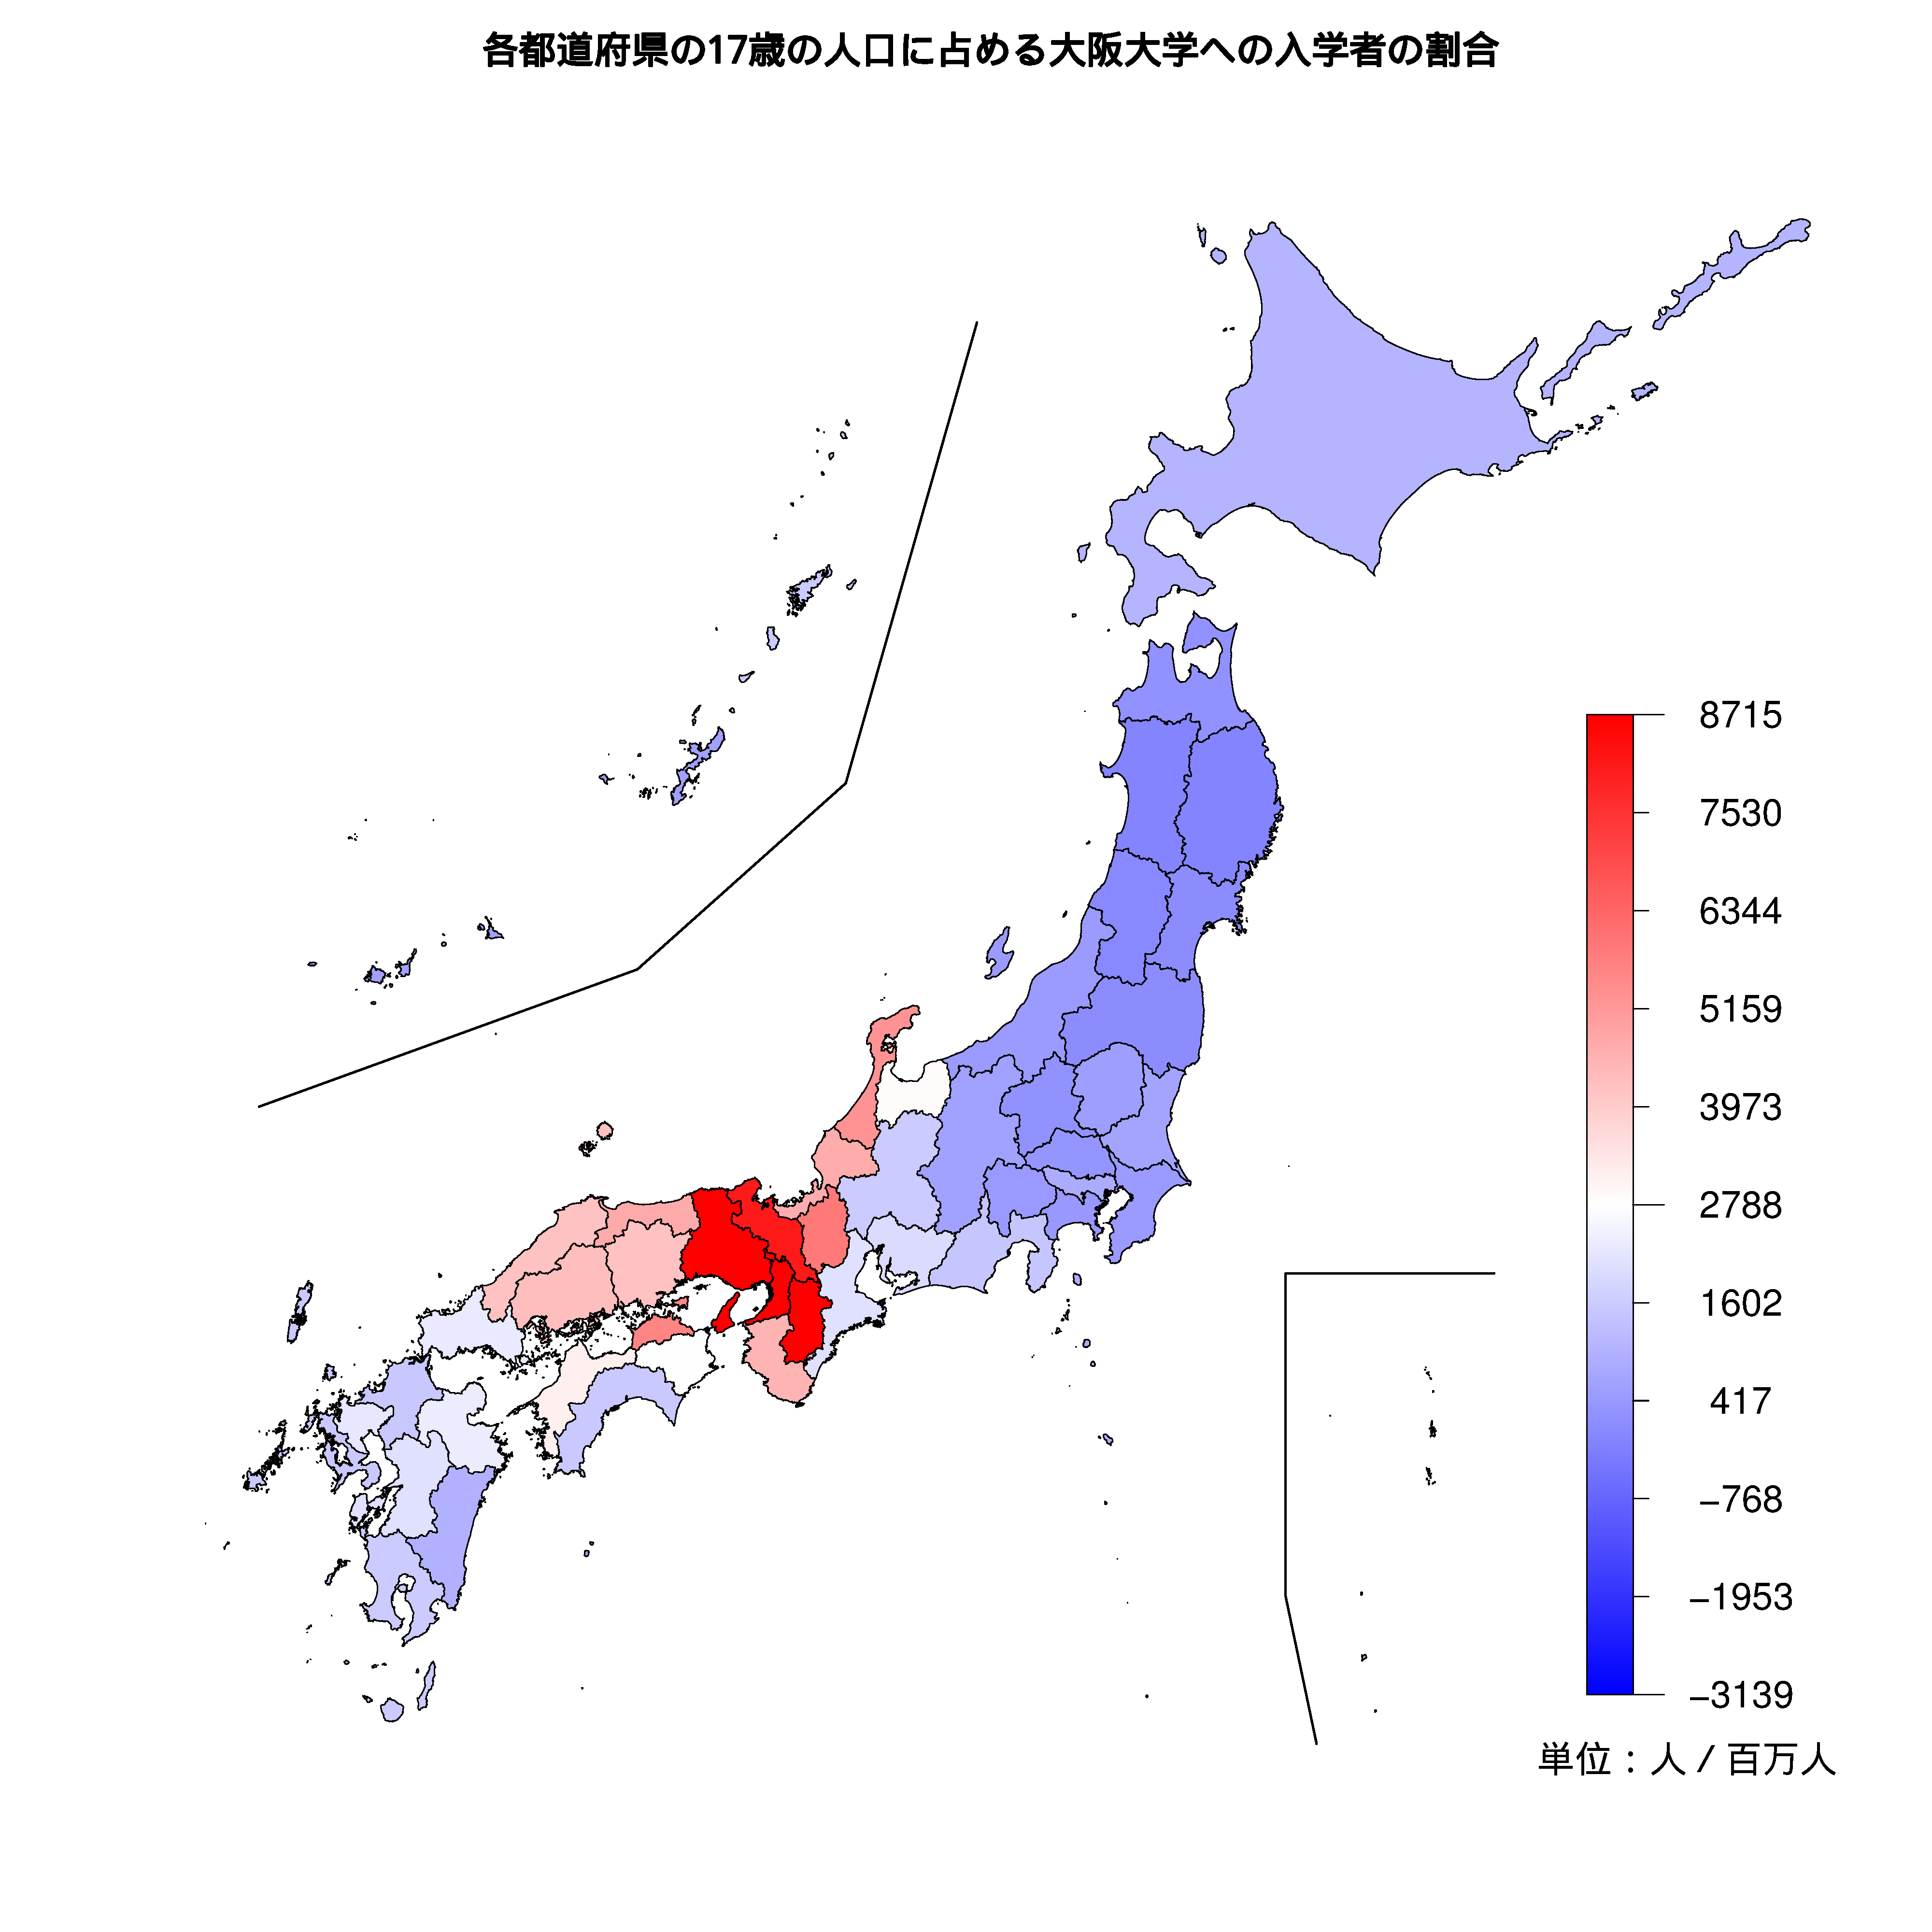 大阪大学への入学者が多い都道府県の色分け地図